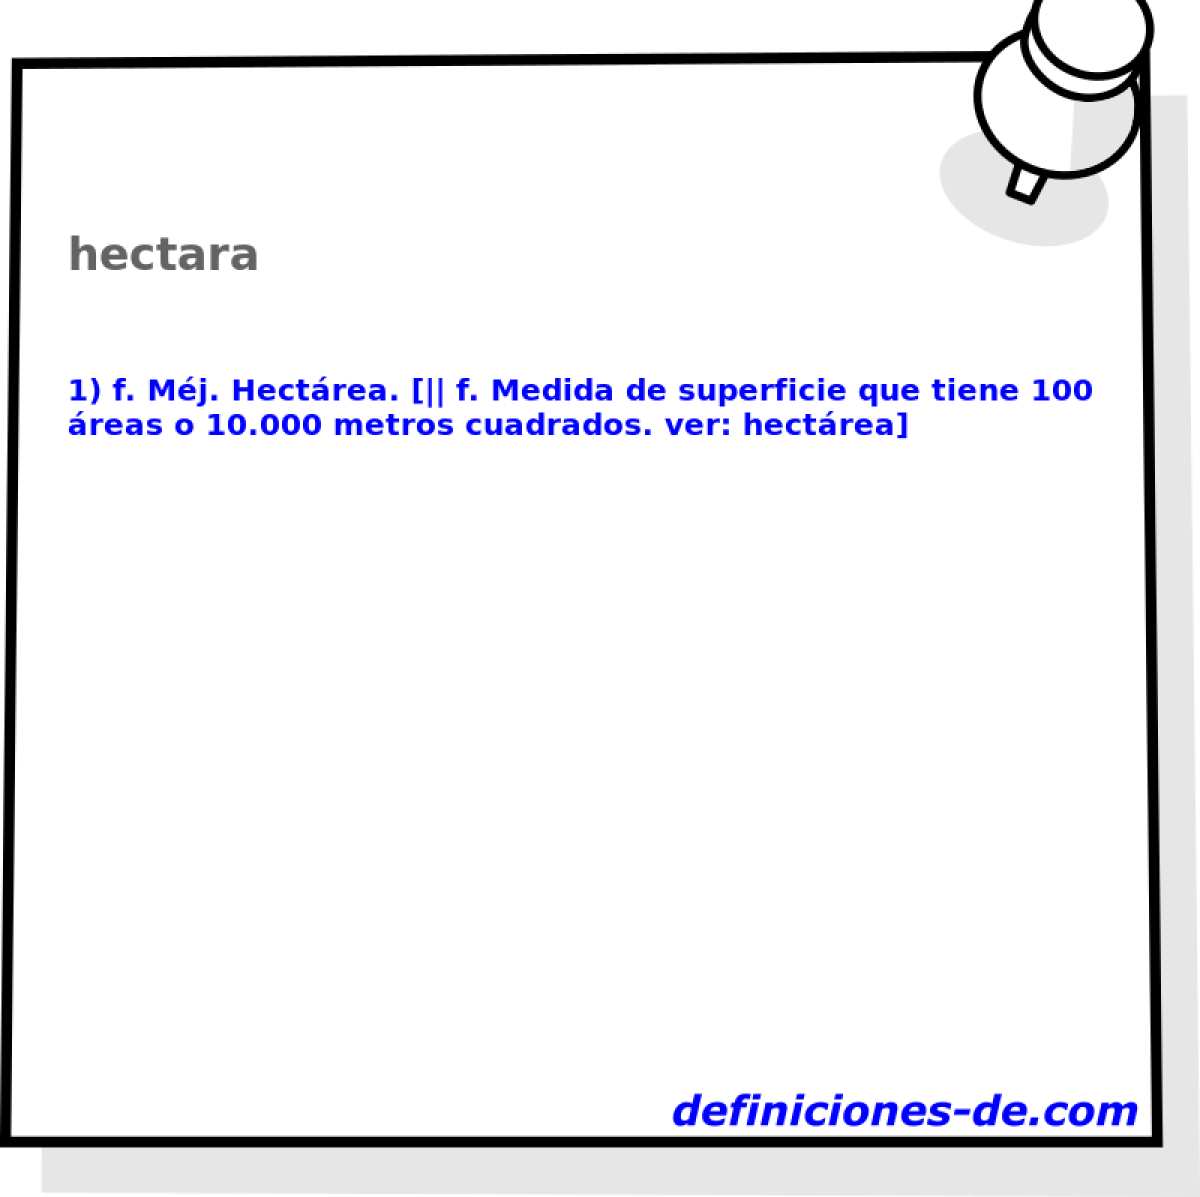 hectara 